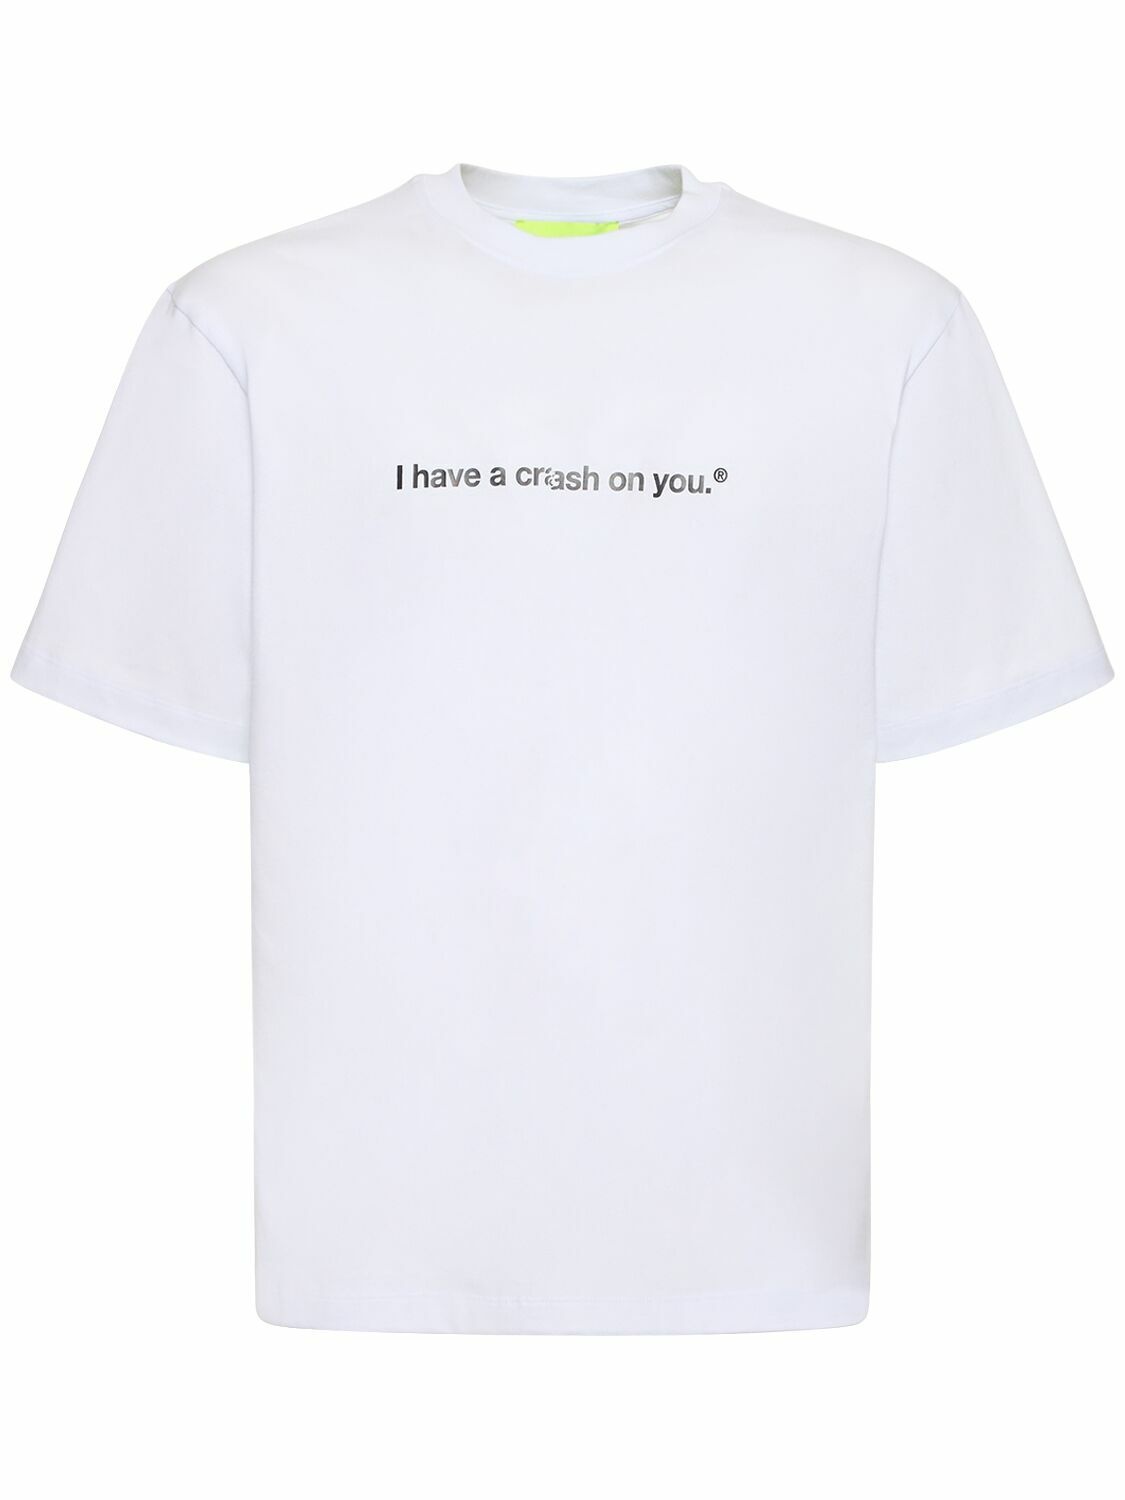 Photo: MSGM - Msgm X Crash Baggage Cotton T-shirt